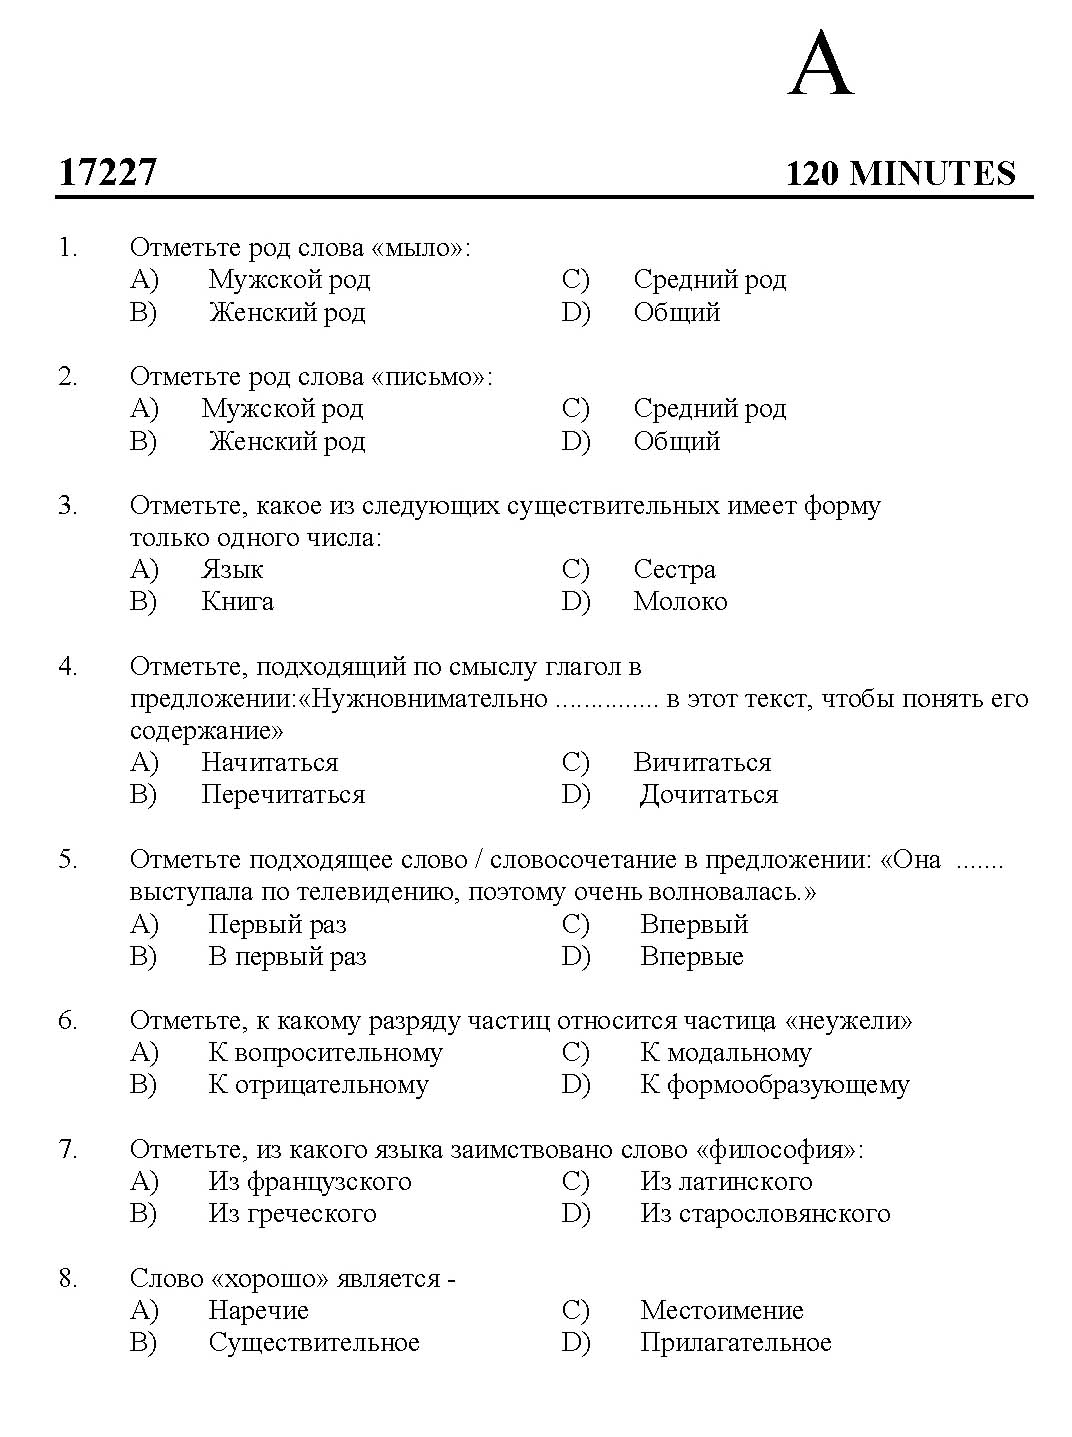 Kerala SET Russian Exam 2017 Question Code 17227 A 1